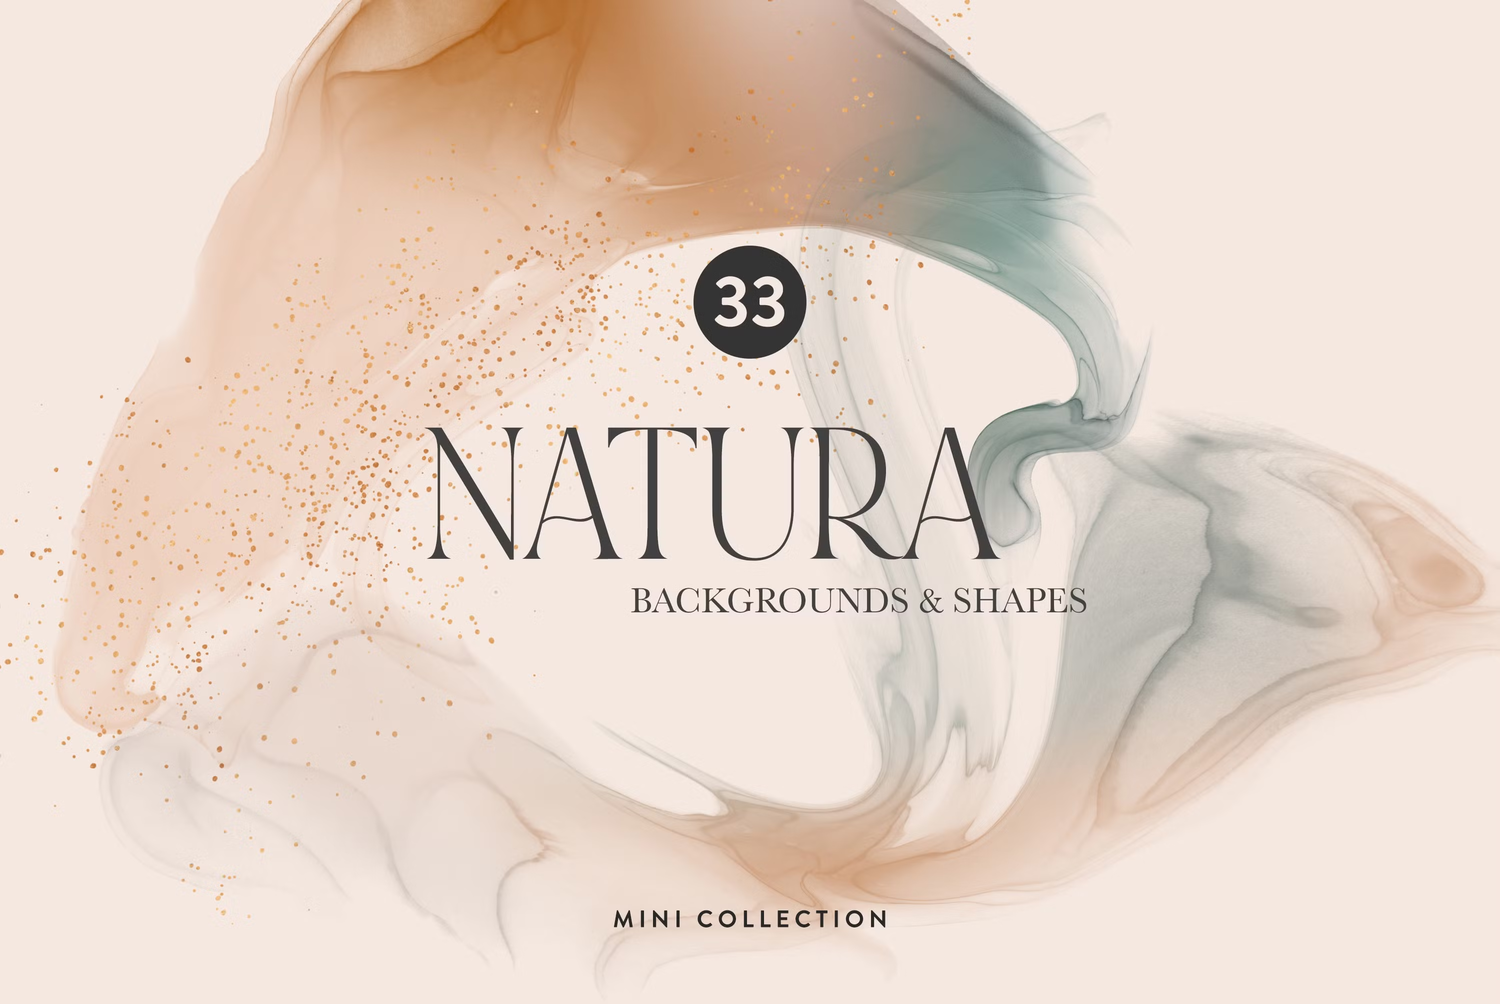 5548 美丽自然色调的抽象流动感背景和形状素材